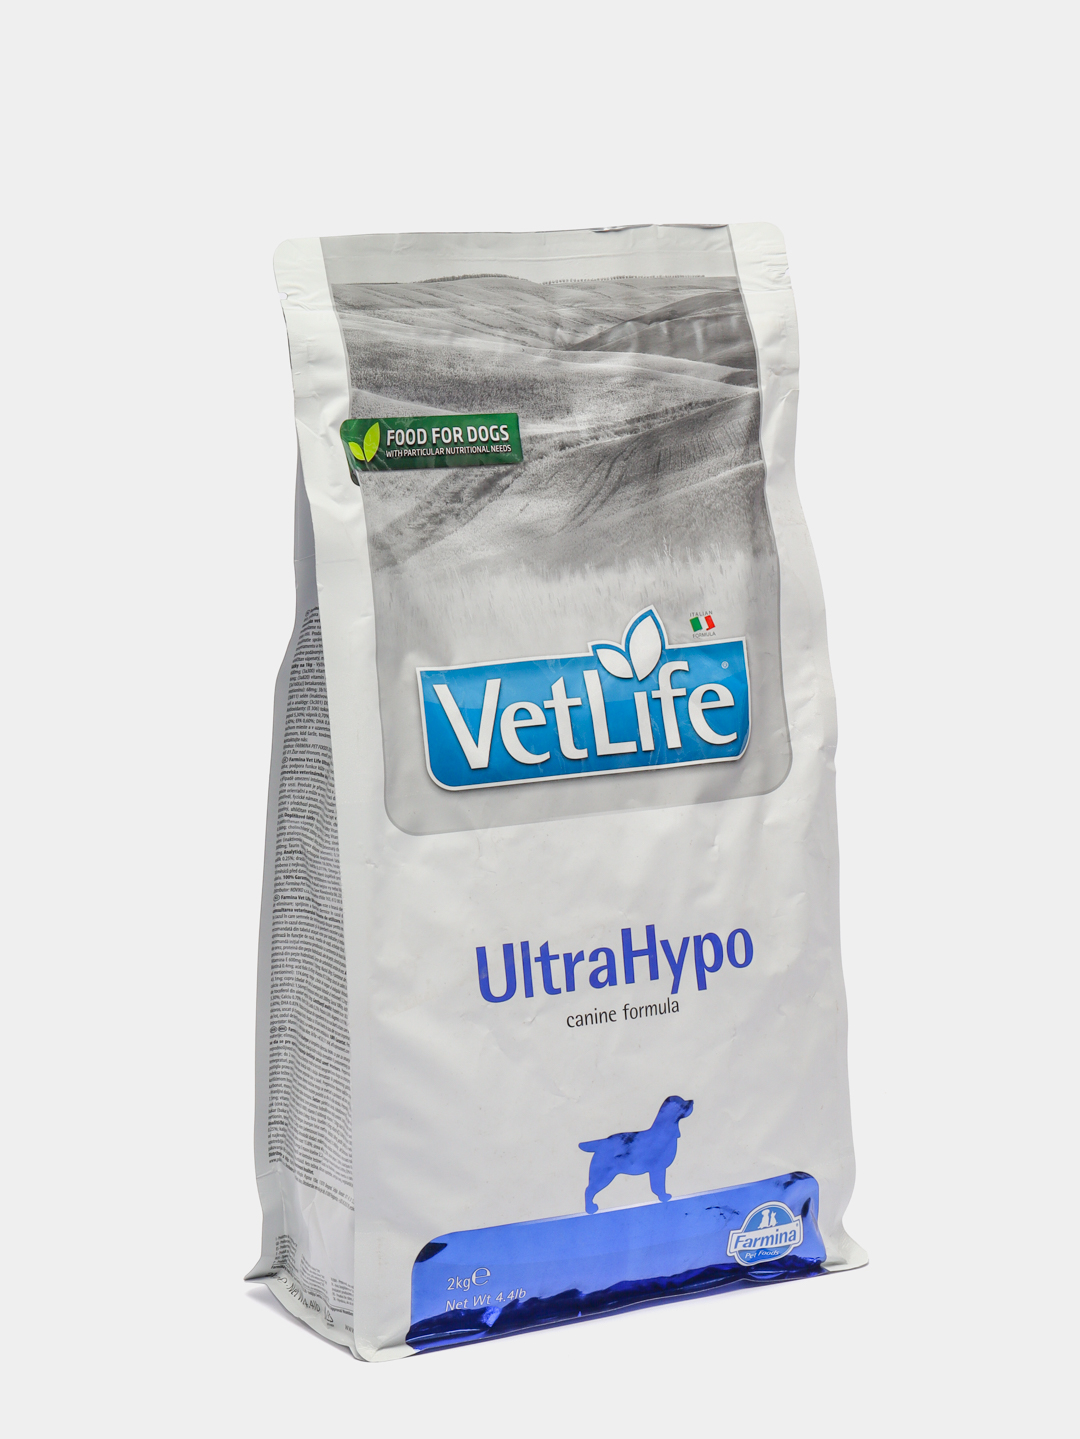 Vet life ultrahypo для собак. Корм для собак vet Life ULTRAHYPO. Фармина ультрагипо для собак. Корм для собак VETLIFE ULTRAHYPO 2 ru. Вит лайф для собак гипоаллергенный ультрагипо.